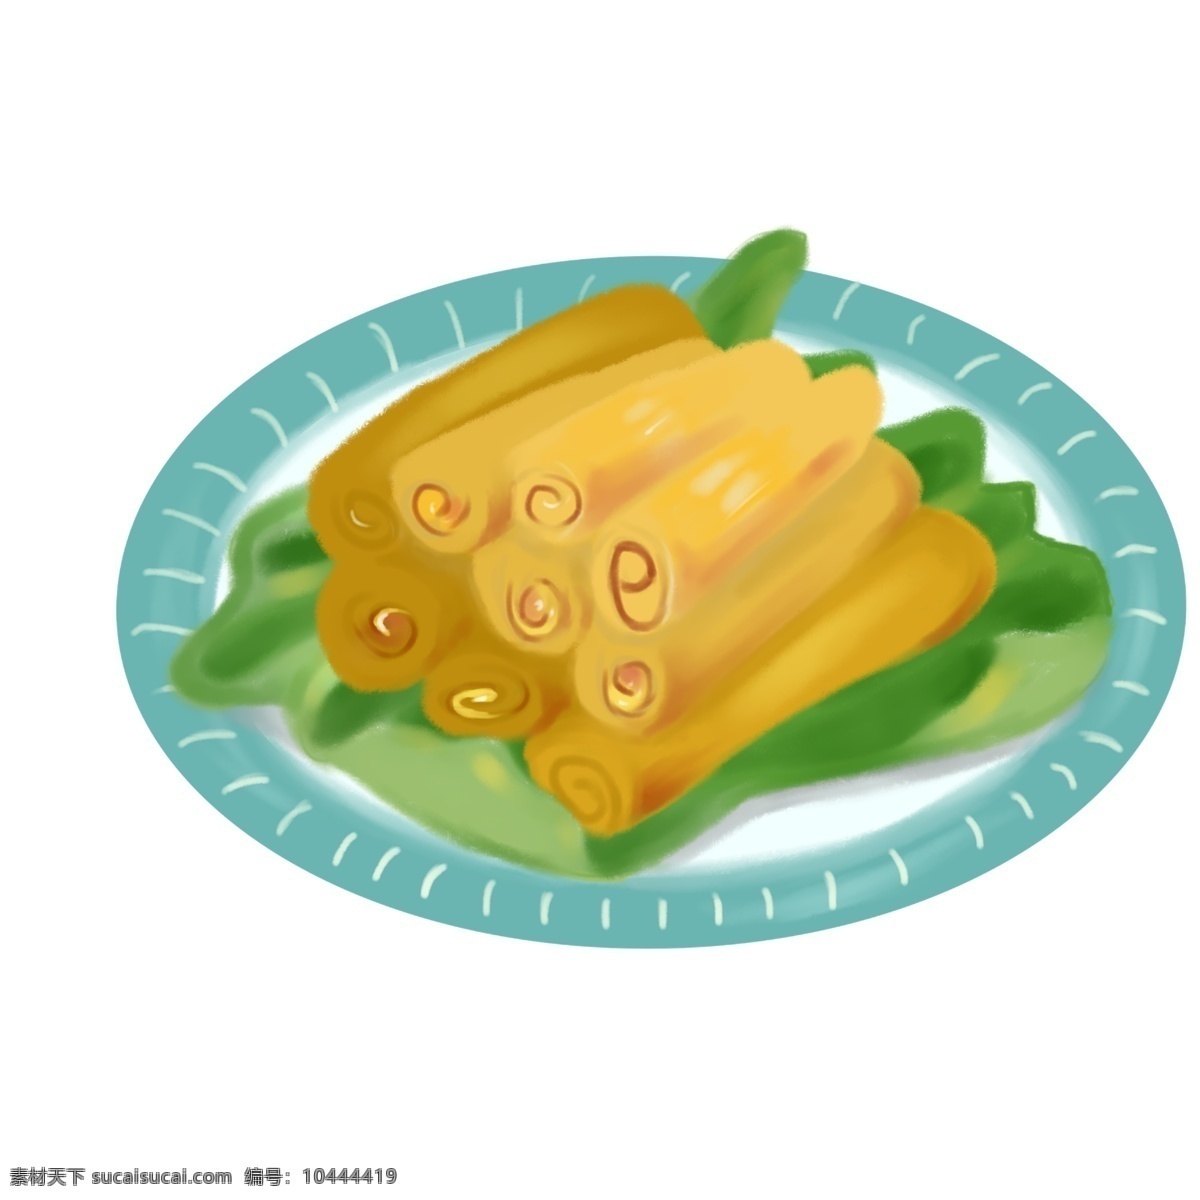 盘 黄色 蛋卷 插画 春节美食 碟子 中国风 年货节 过年 一盘蛋卷插画 黄色的蛋卷 绿色的蔬菜 蓝色的盘子